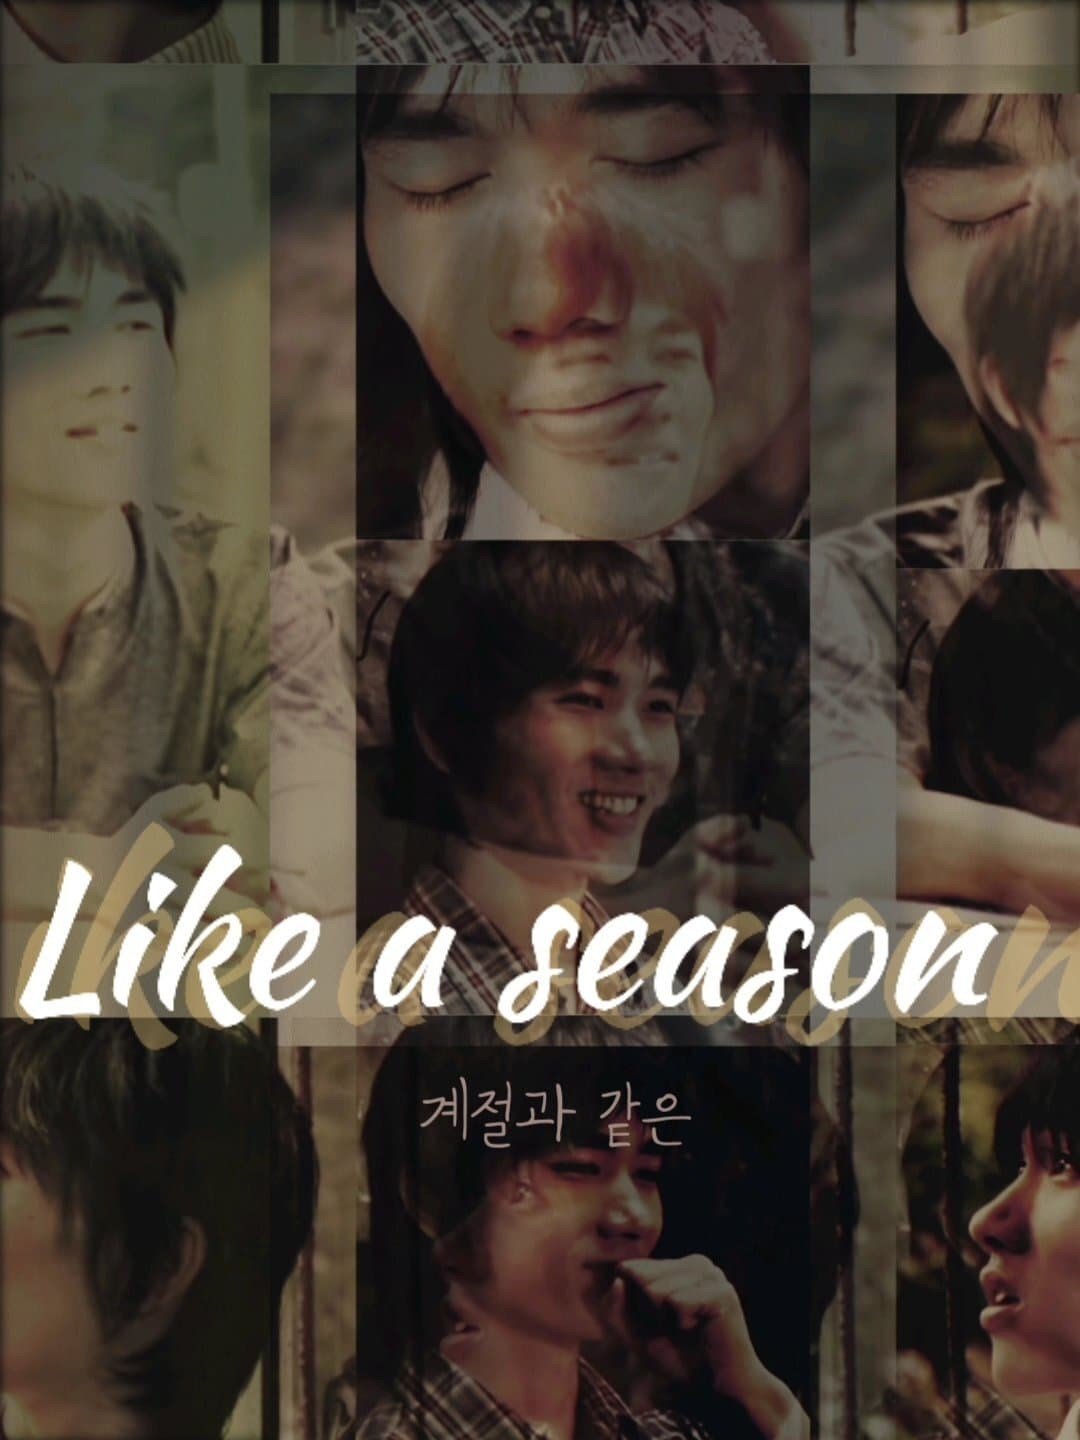 Like a season (2007)